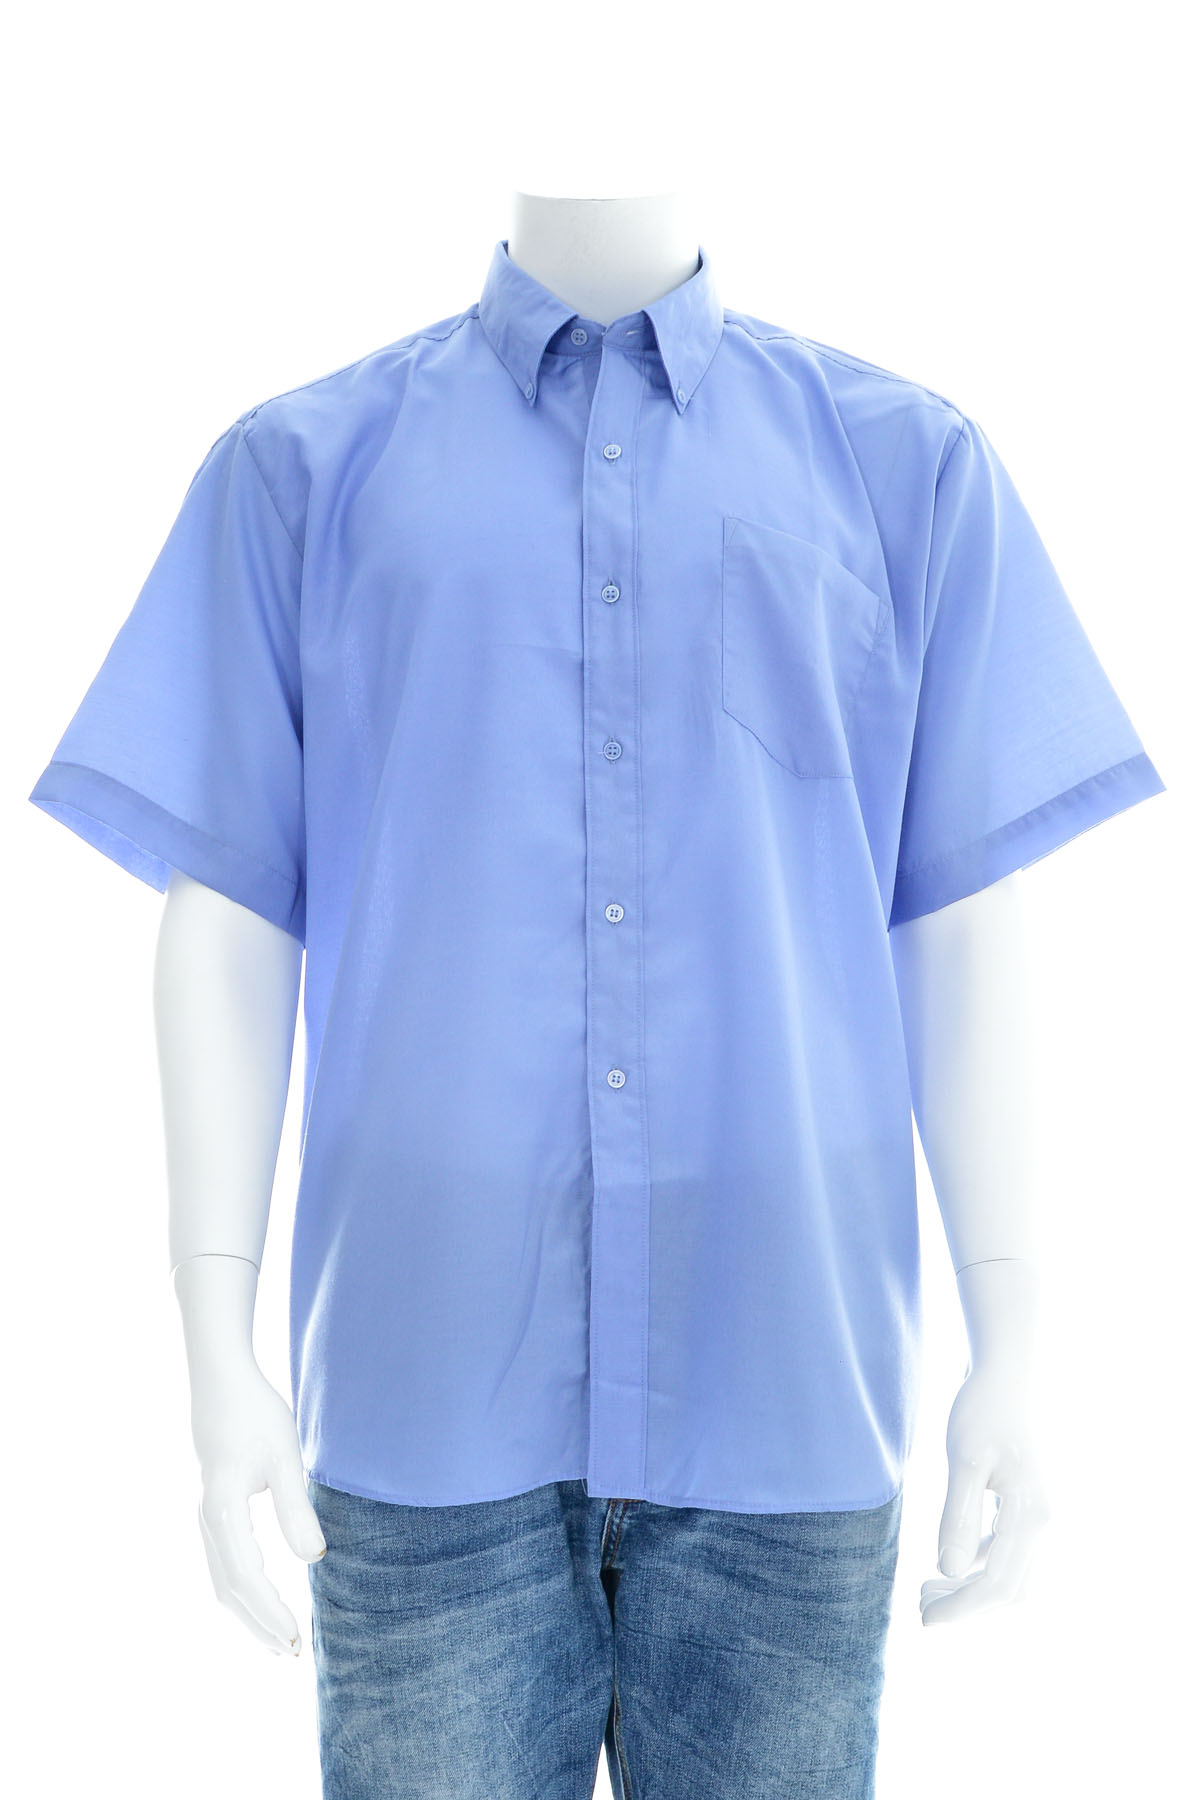 Men's shirt - Fuyonglin Tongdafushi - 0